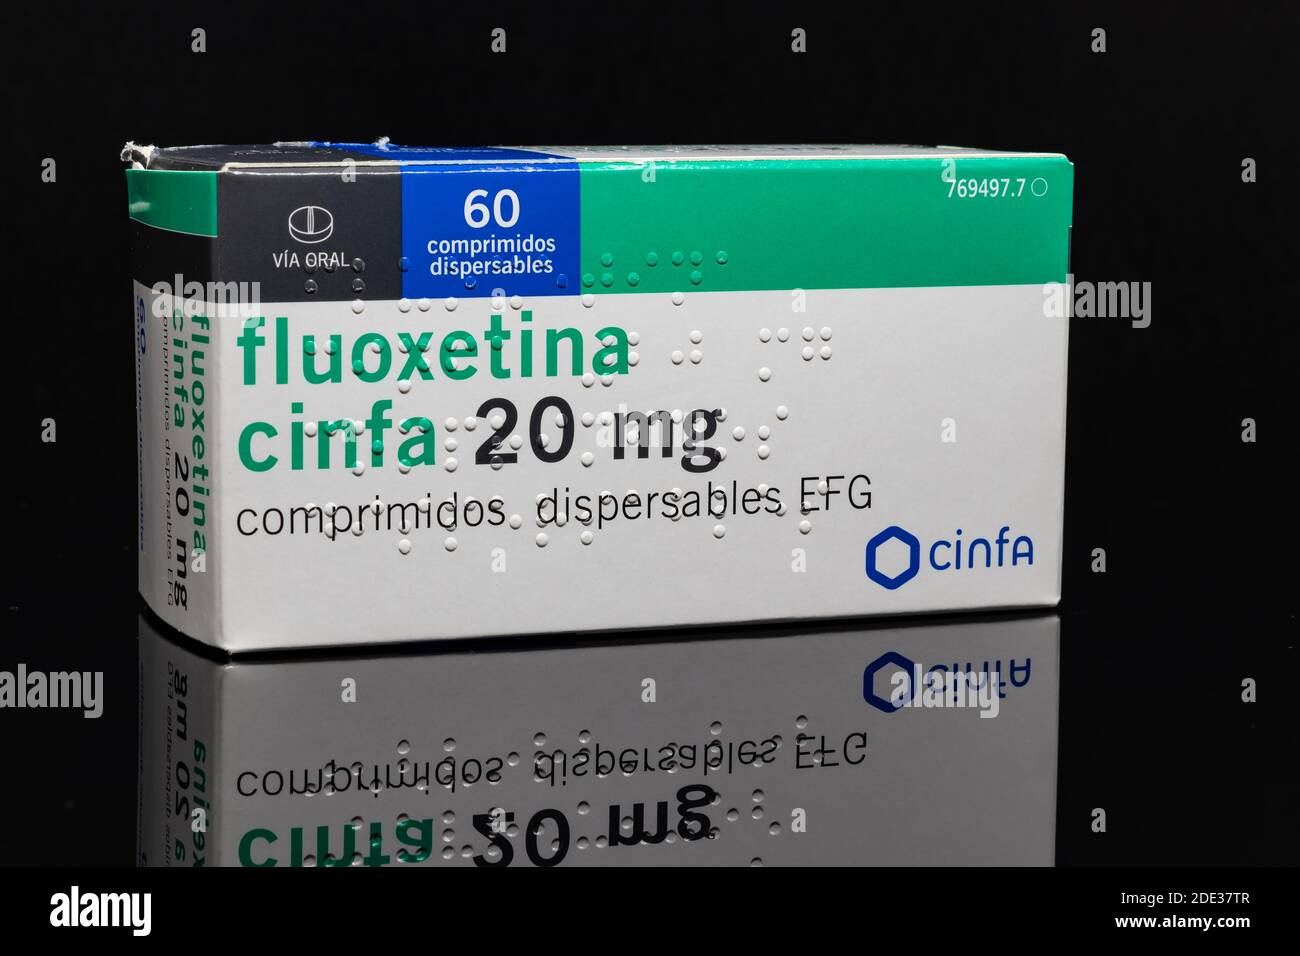 Huelva, Spagna - 26 novembre 2020: Scatola spagnola di Fluoxetina Cinfa 20mg. Fluoxetina è un tipo di antidepressivo noto come SSRI (serotonina selettiva) Foto Stock